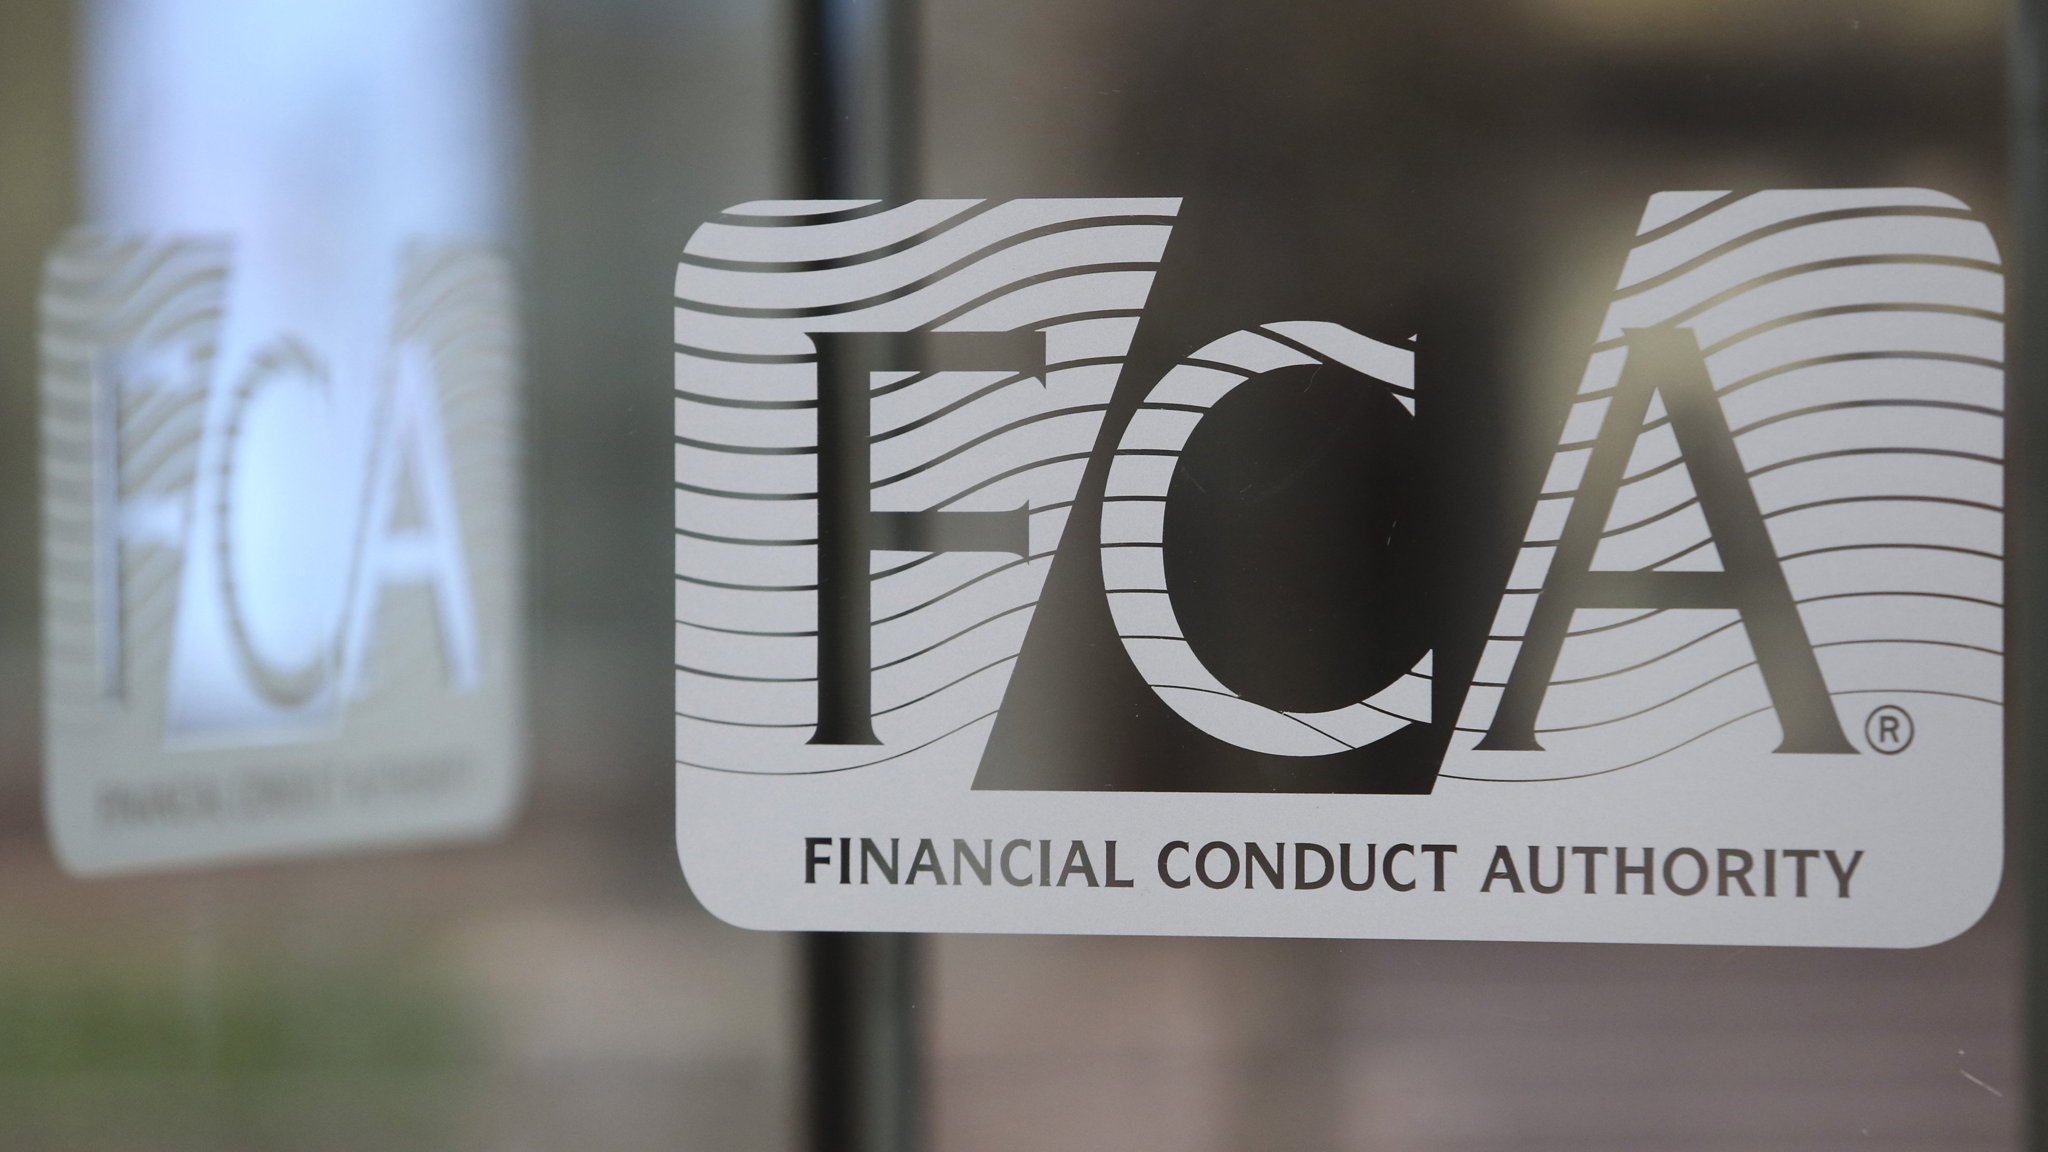  هيئة السلوك المالي FCA تسعى لحظر بعض الحوافز من خلال قواعد التشفير الجديدة